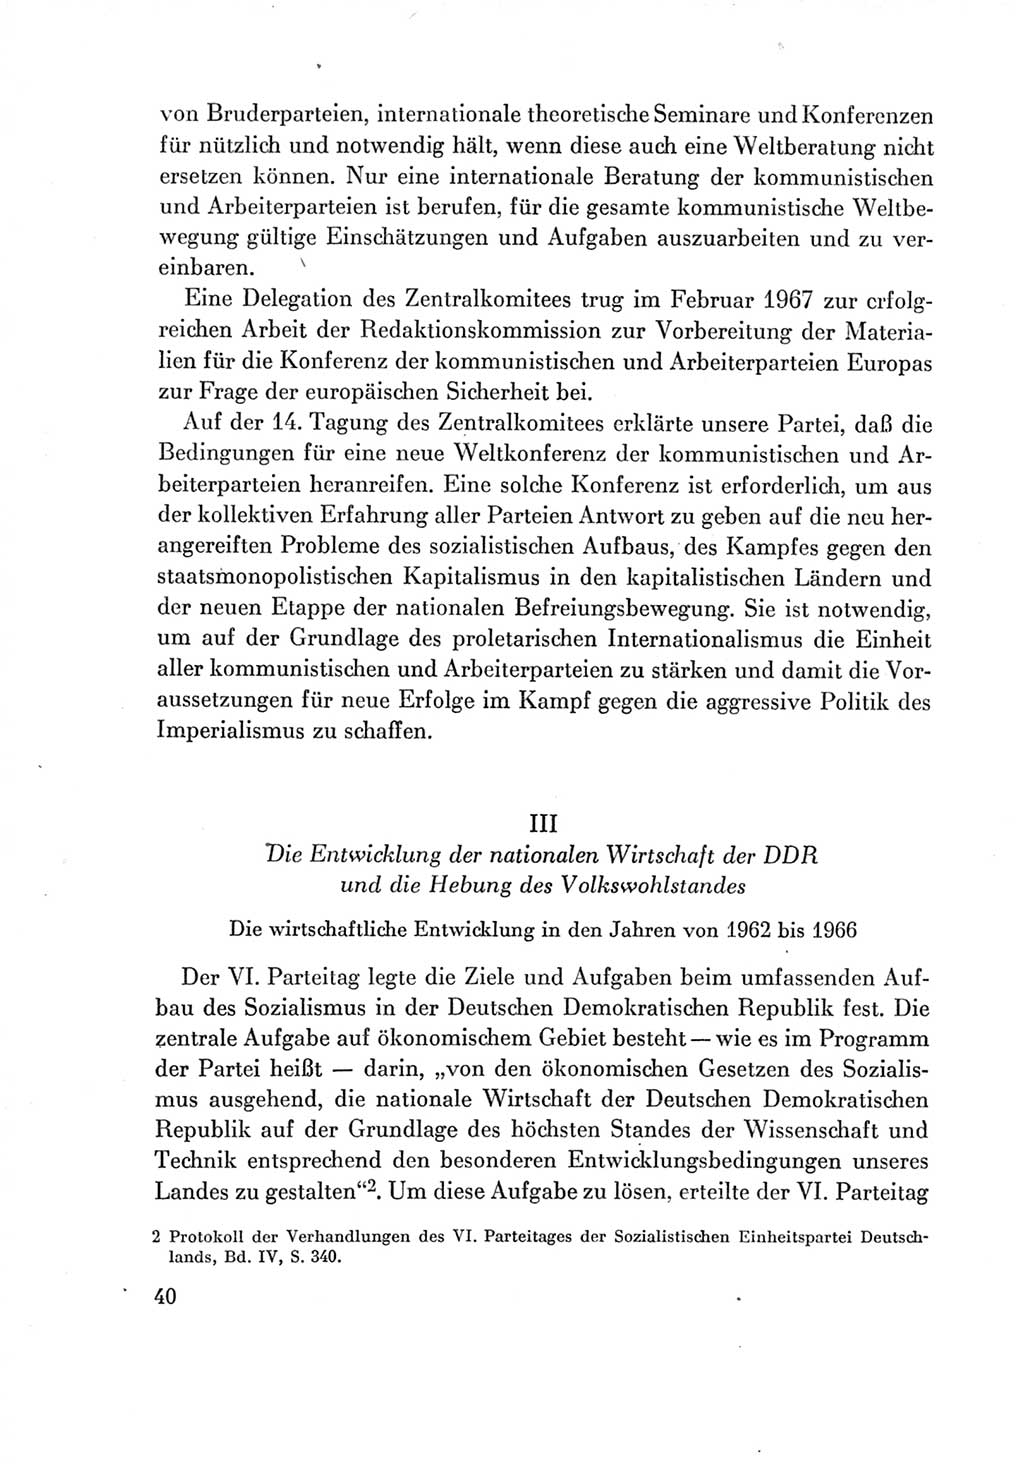 Protokoll der Verhandlungen des Ⅶ. Parteitages der Sozialistischen Einheitspartei Deutschlands (SED) [Deutsche Demokratische Republik (DDR)] 1967, Band Ⅳ, Seite 40 (Prot. Verh. Ⅶ. PT SED DDR 1967, Bd. Ⅳ, S. 40)